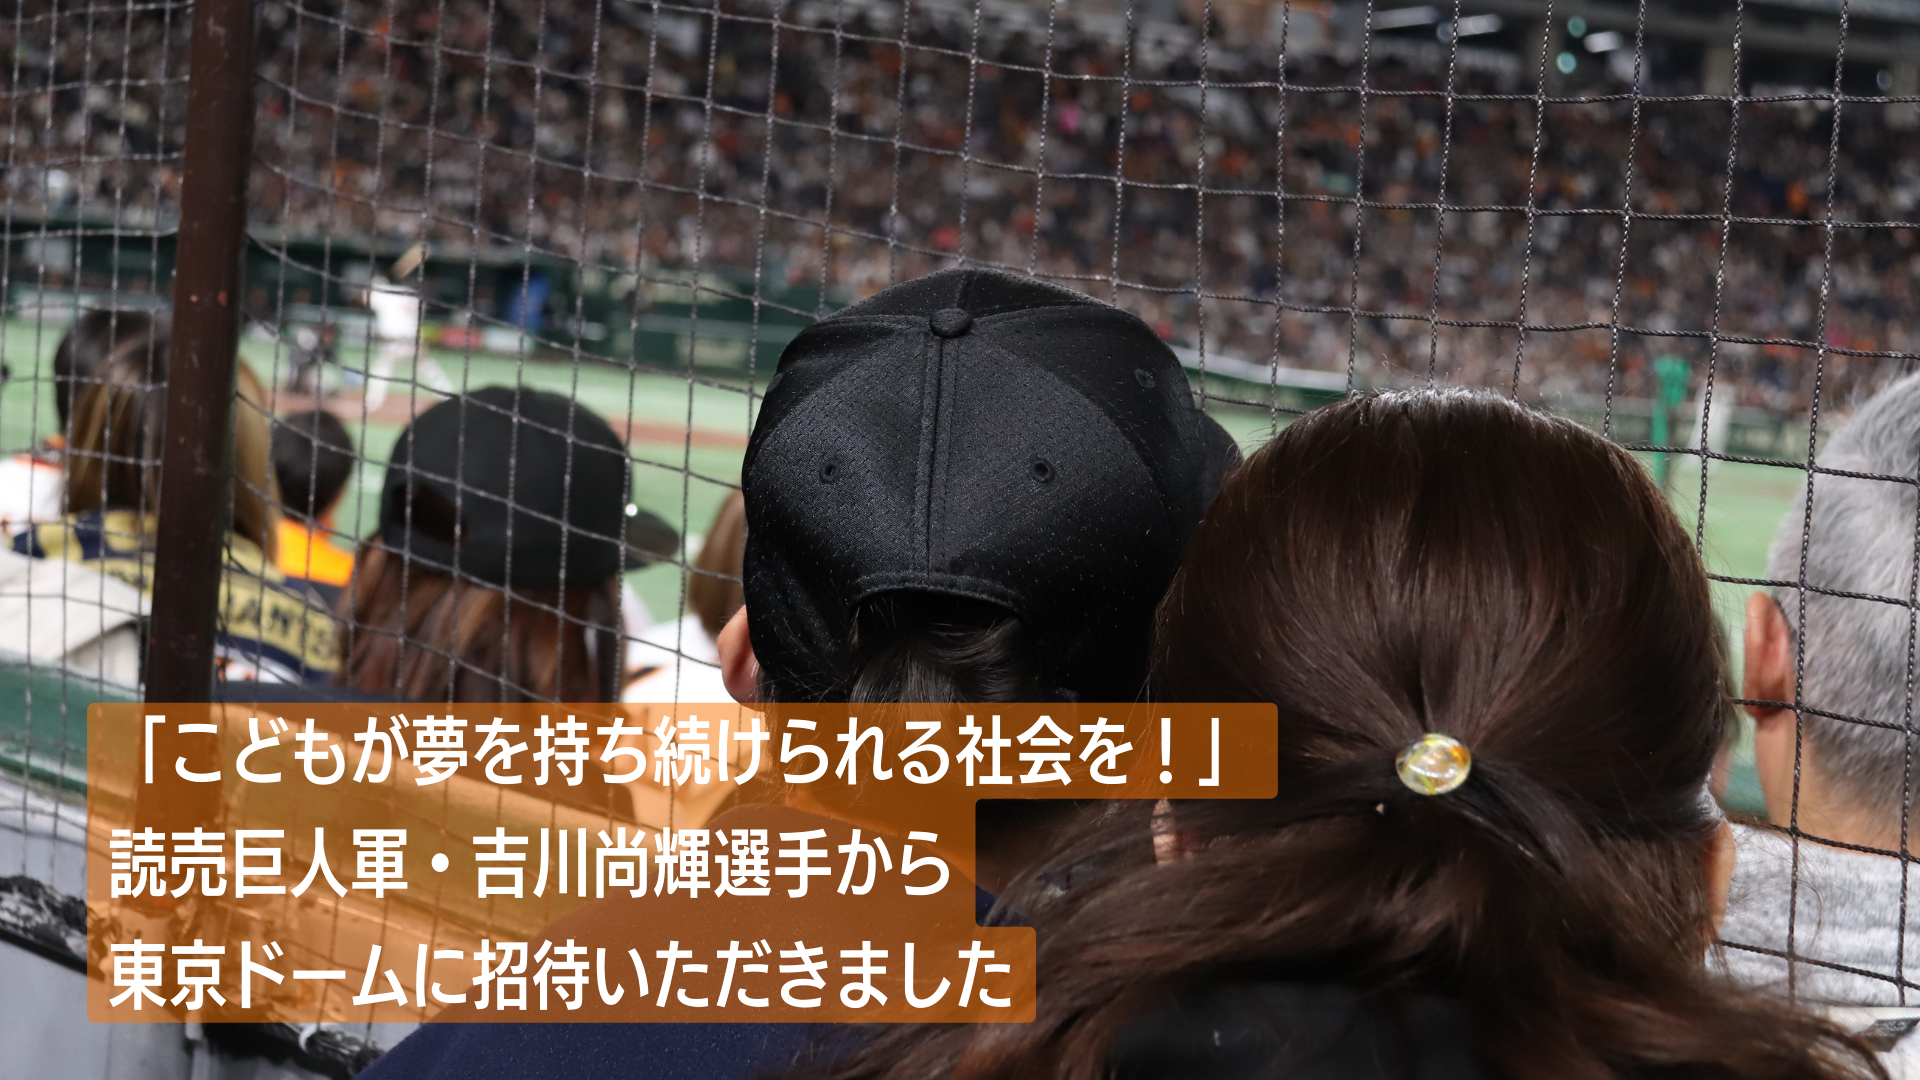 東京ドームの観客席から打席に立つ吉川選手を見守る親子の写真。テキスト「こどもが夢を持ち続けられる社会を！ 読売巨人軍・吉川尚輝選手から東京ドームに招待いただきました」